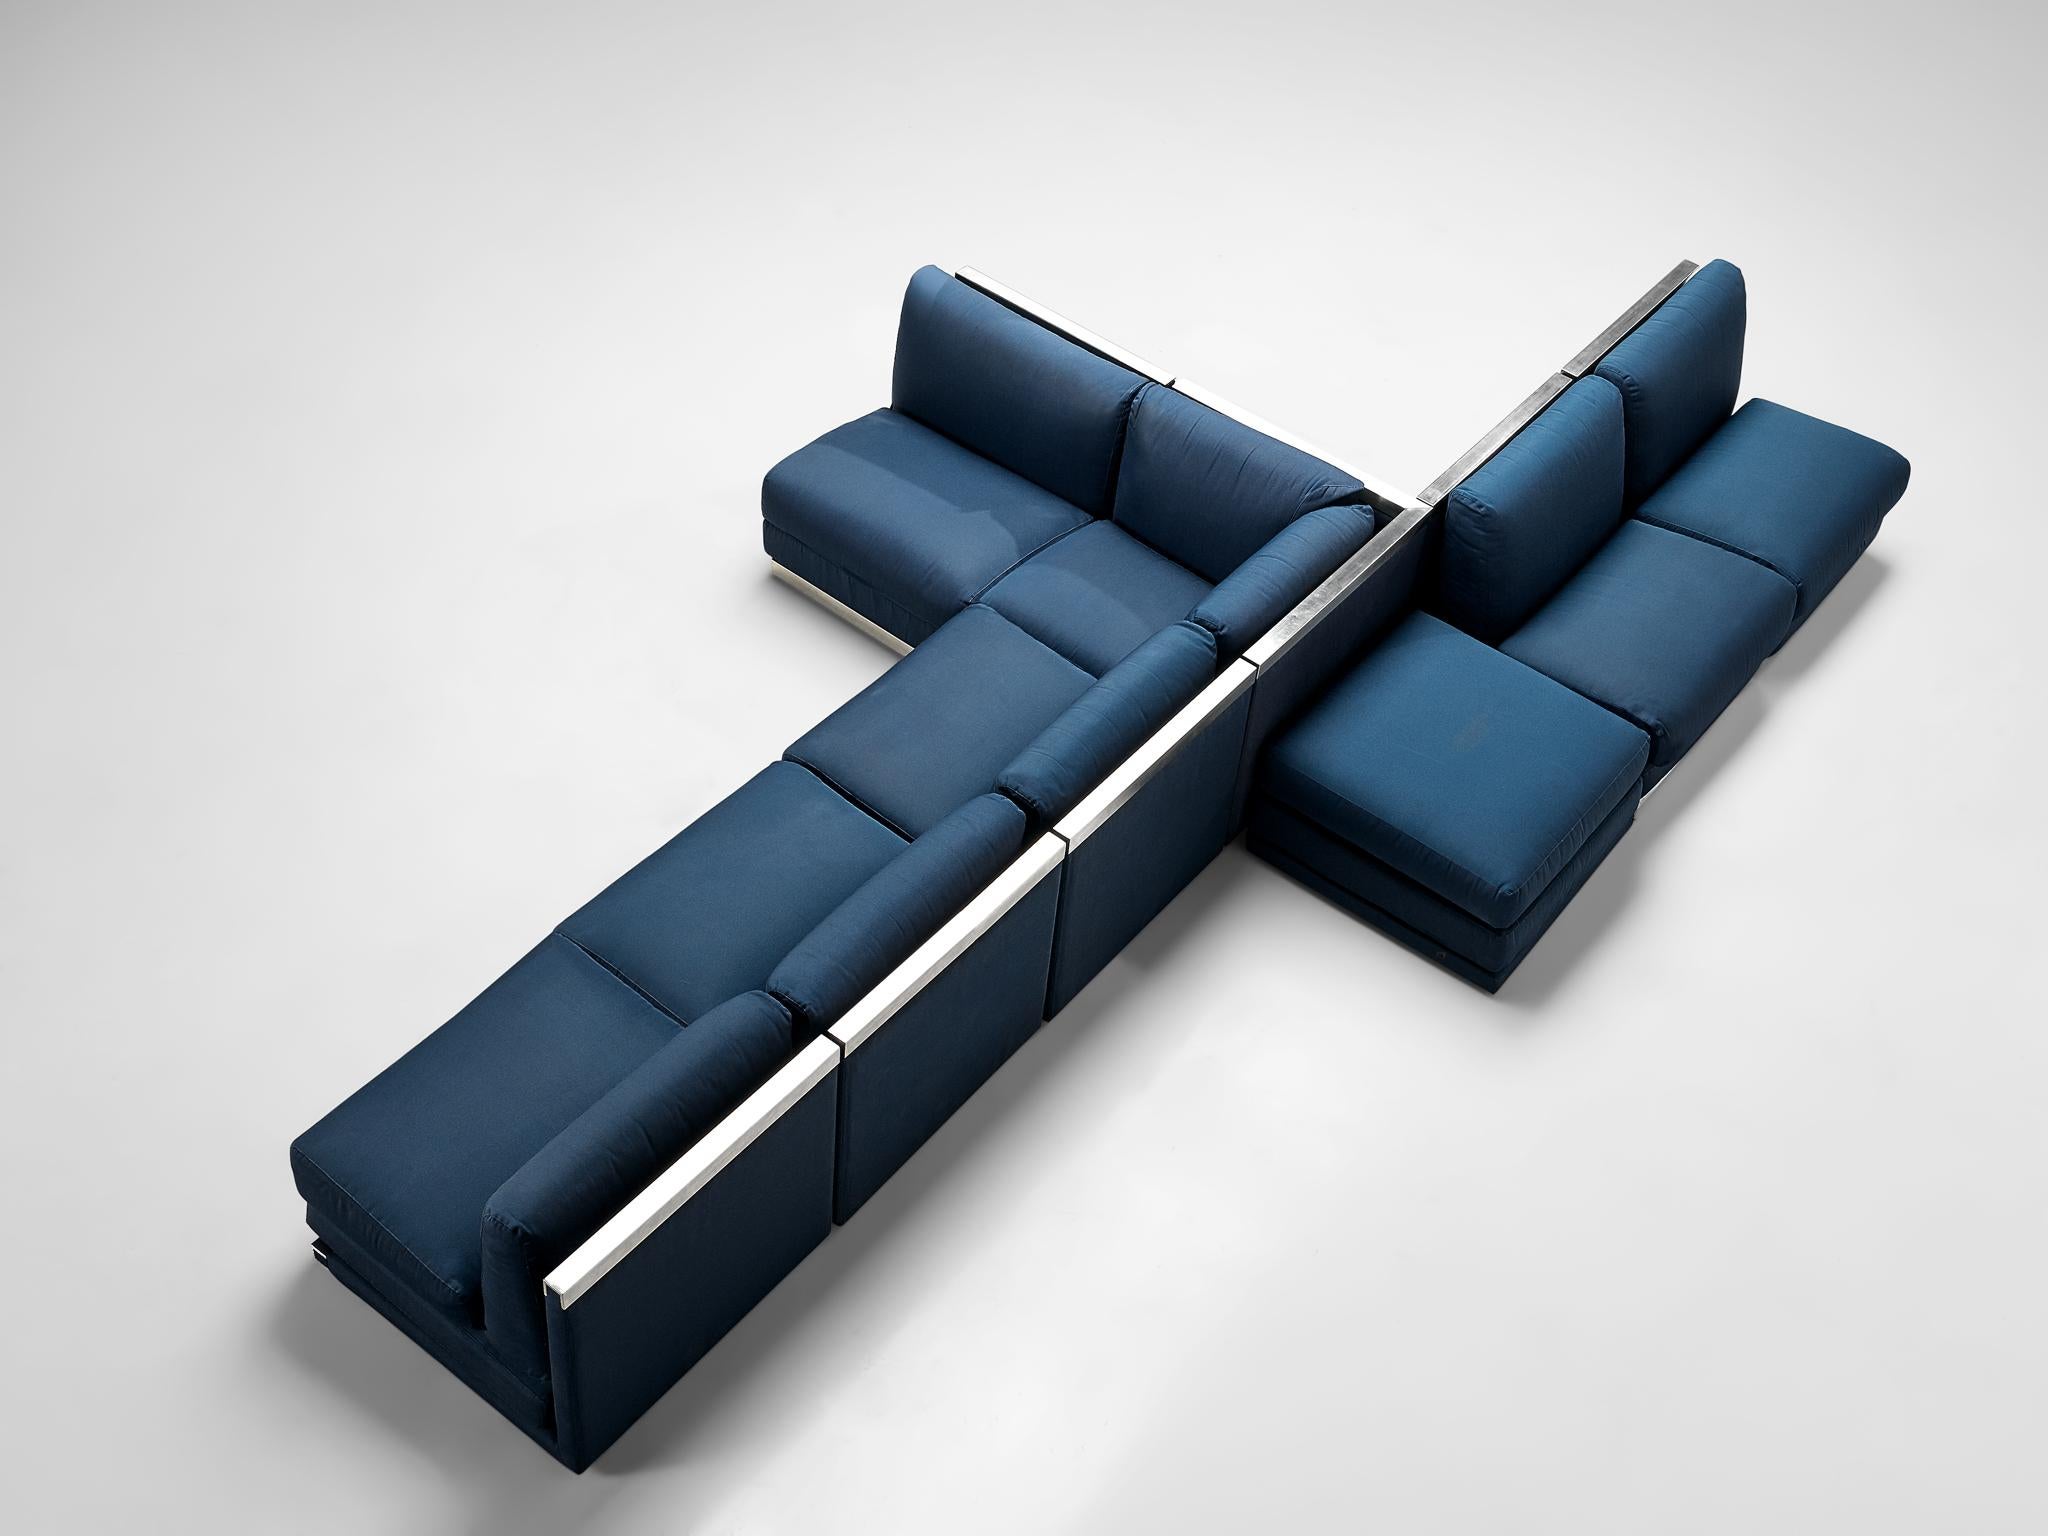 Sektionssofa, kobaltblaue Stoffpolsterung, Aluminium, Italien, 1980er Jahre

Großes postmodernes modulares Sofa, bestehend aus sechs regulären Sitzelementen, einer Ecke und einem Element ohne Rückenlehne, das als Beistelltisch oder Ottomane